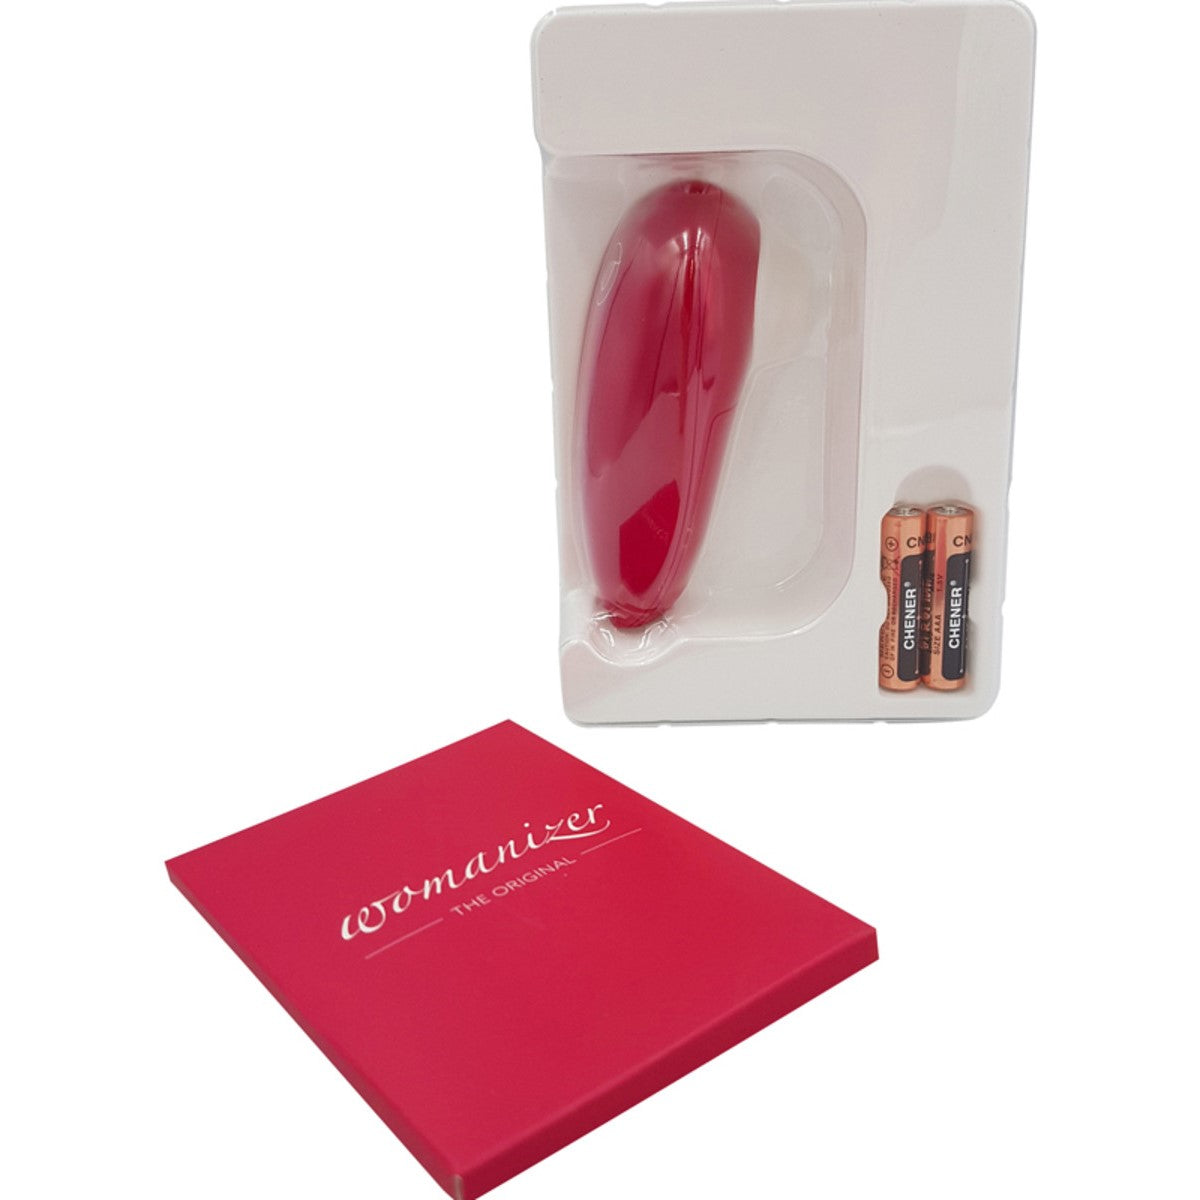 Womanizer Mini Red Wine Air Pulse Clitoral Vibrator